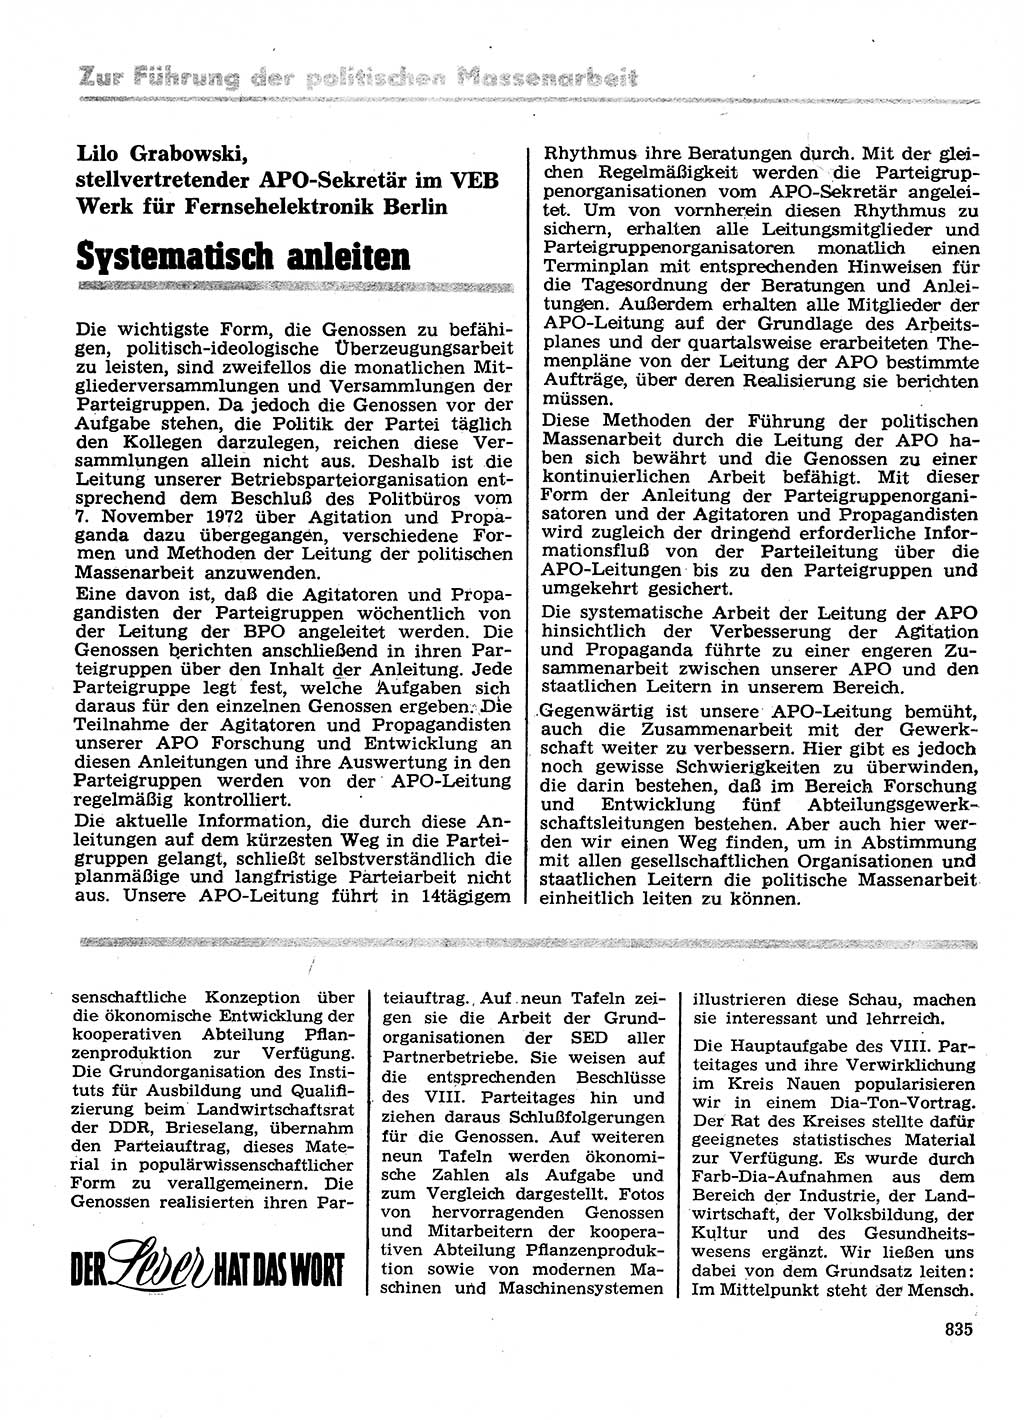 Neuer Weg (NW), Organ des Zentralkomitees (ZK) der SED (Sozialistische Einheitspartei Deutschlands) für Fragen des Parteilebens, 28. Jahrgang [Deutsche Demokratische Republik (DDR)] 1973, Seite 835 (NW ZK SED DDR 1973, S. 835)